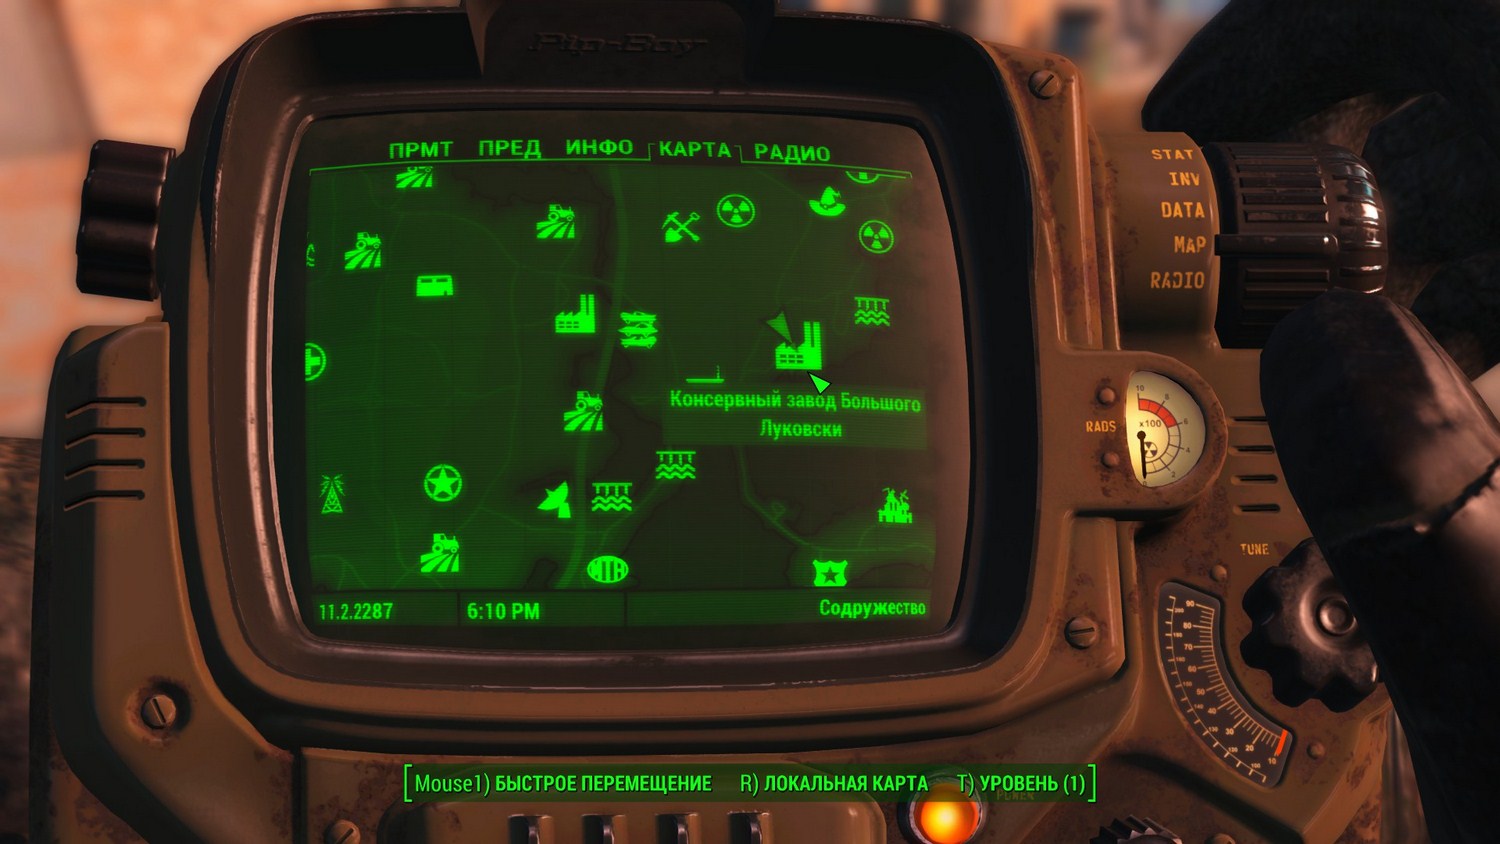 Fallout 4 консервный завод луковски карта (106) фото